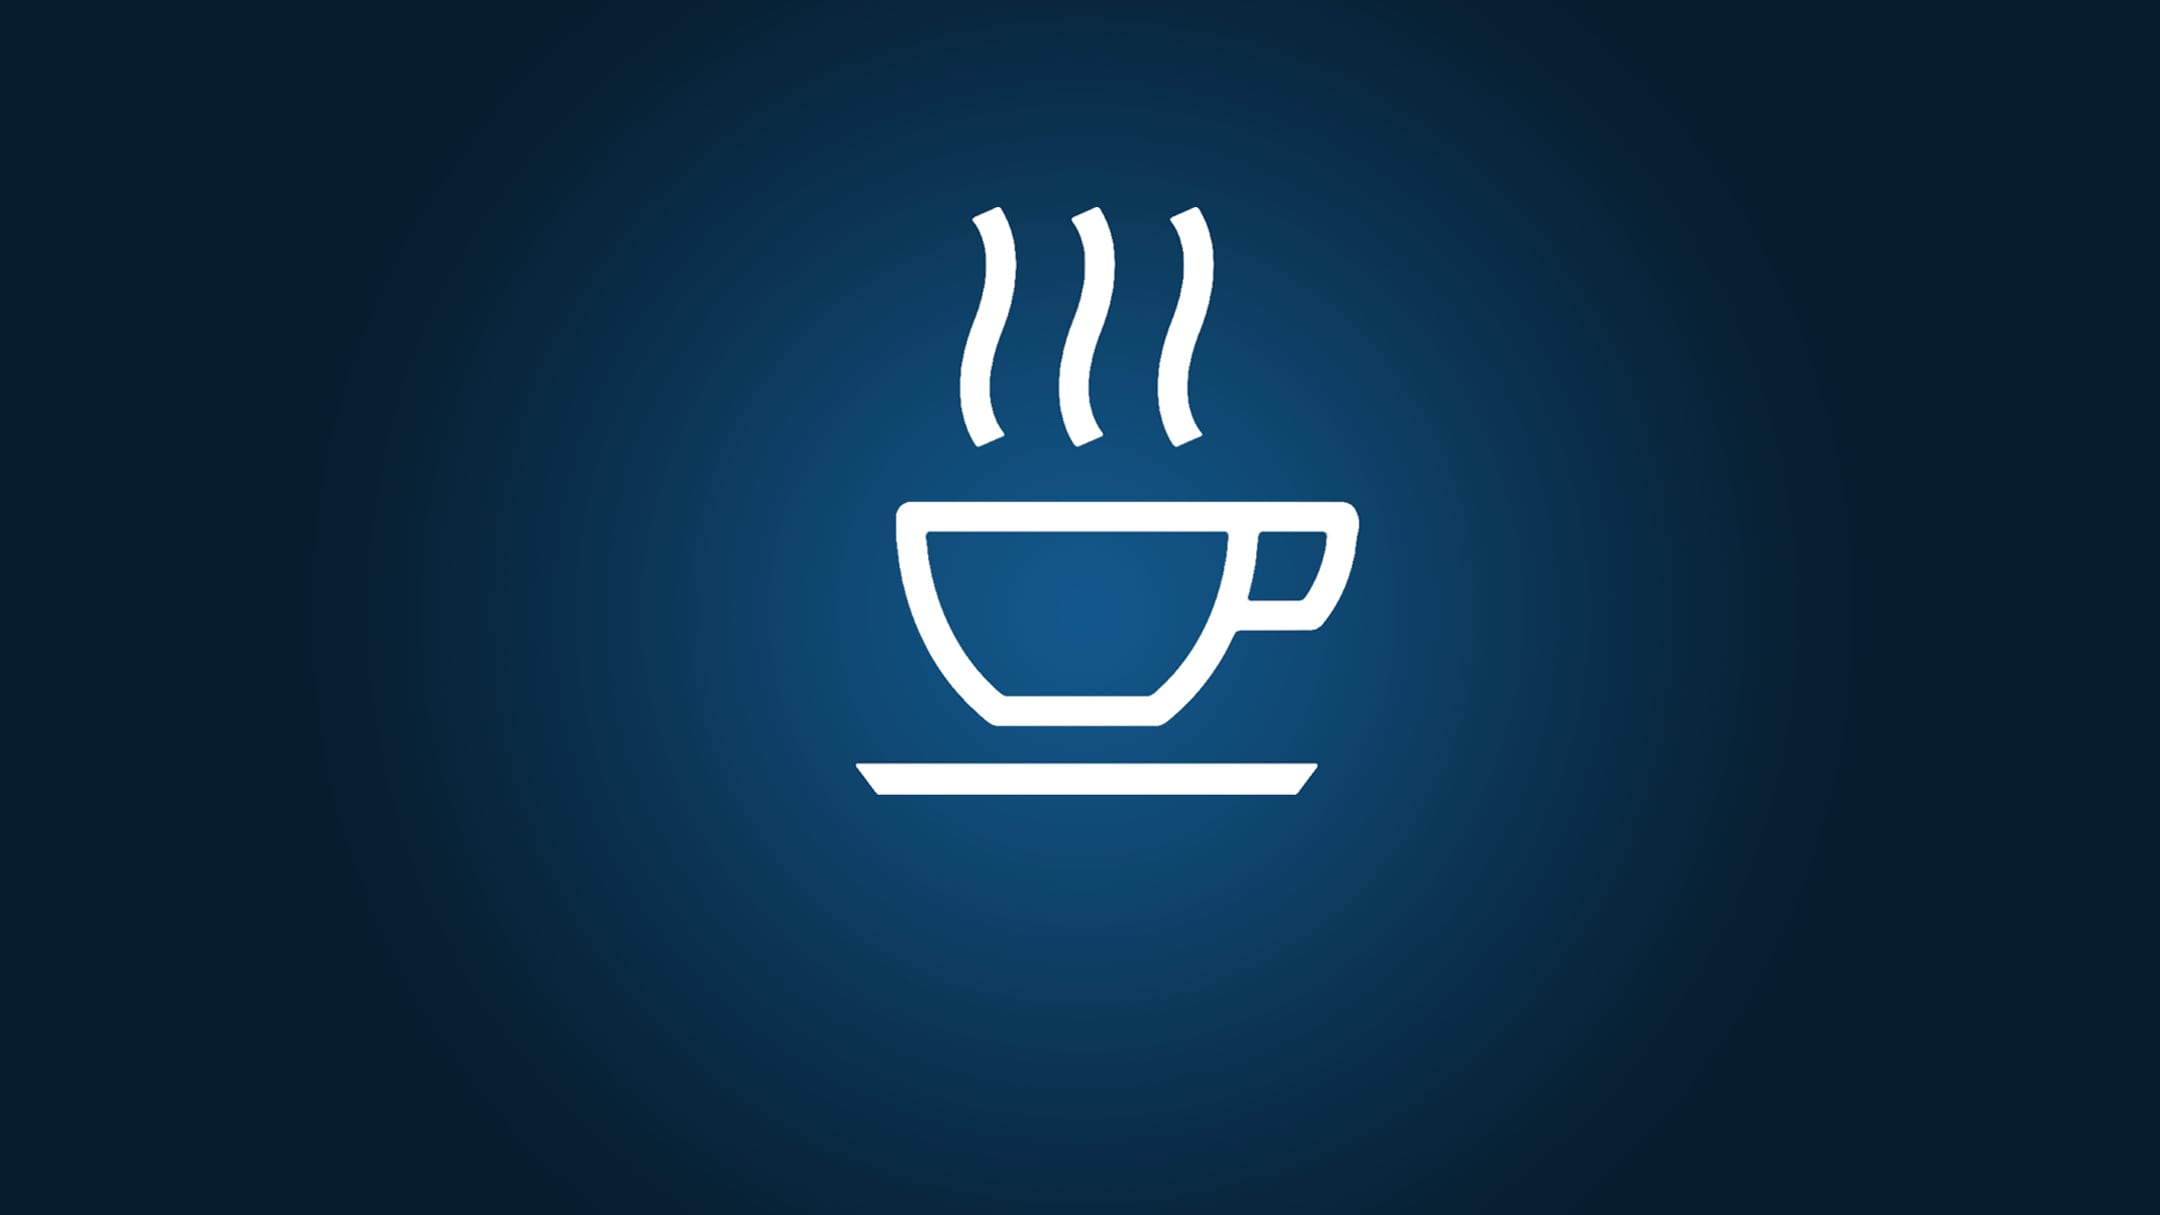 Icone d’une tasse de café sur fond bleu.